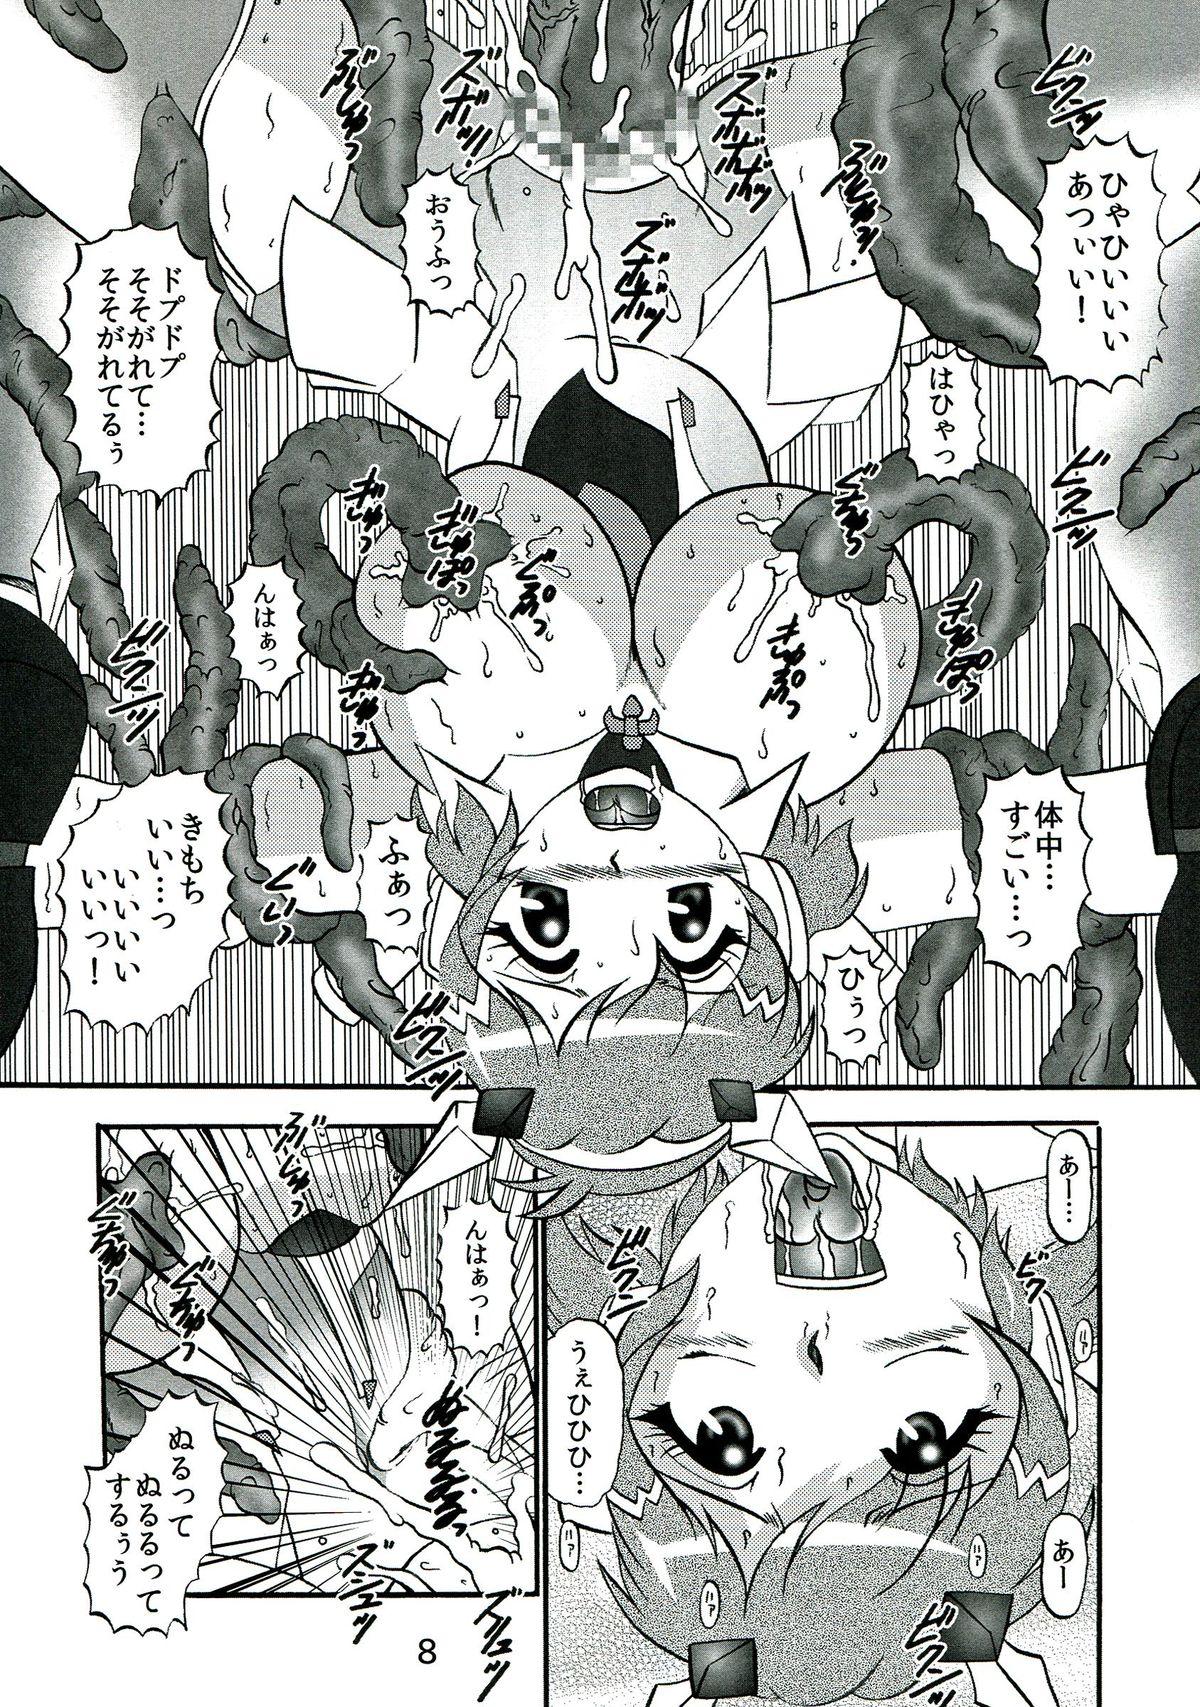 Seduction Porn Seija no Shinshoku - Senki zesshou symphogear Ex Gf - Page 8